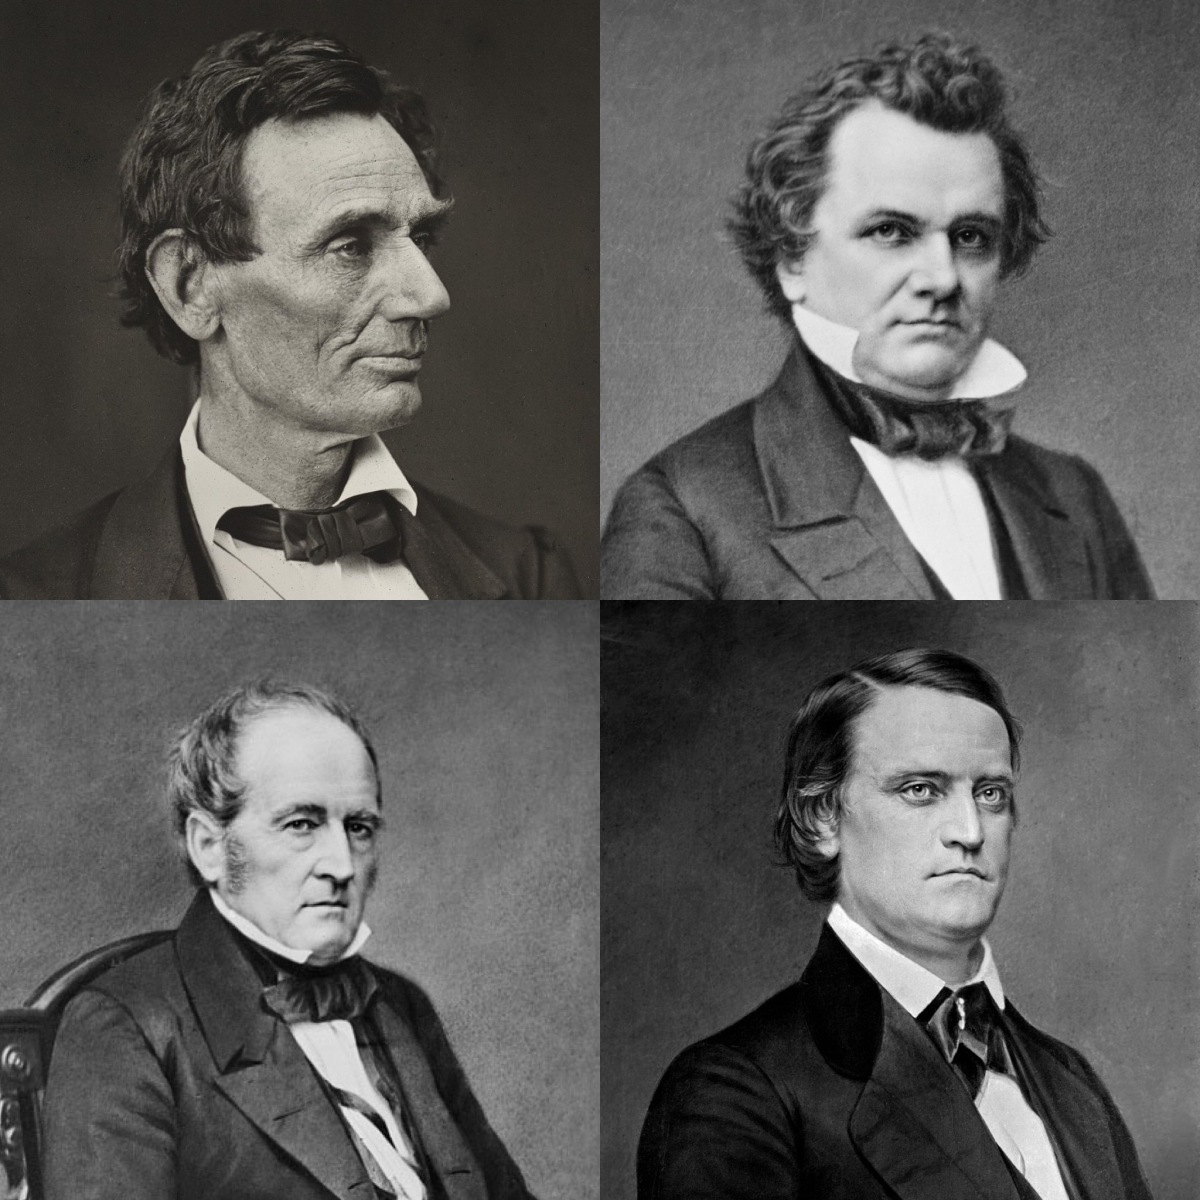 1860 – ABRAHAM LINCOLN VS STEPHEN DOUGLAS VS JOHN C. BRECKINRIDGE VS JOHN BELL